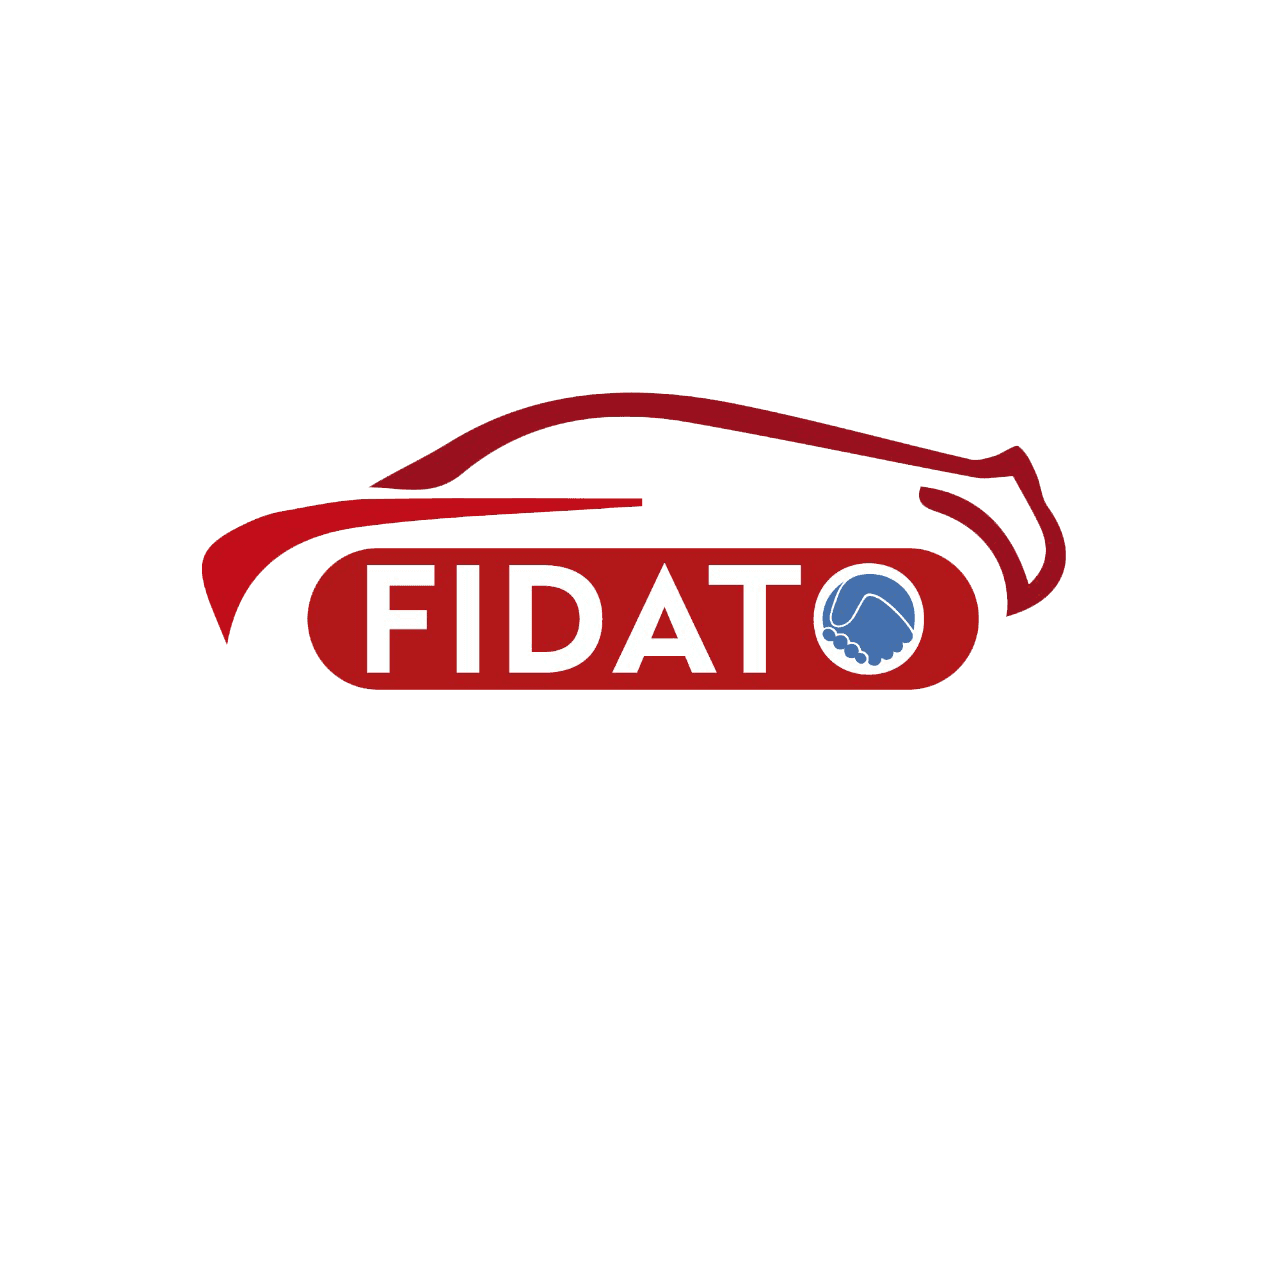 FIDATO CAR SERVICES PRIVATE LIMITED